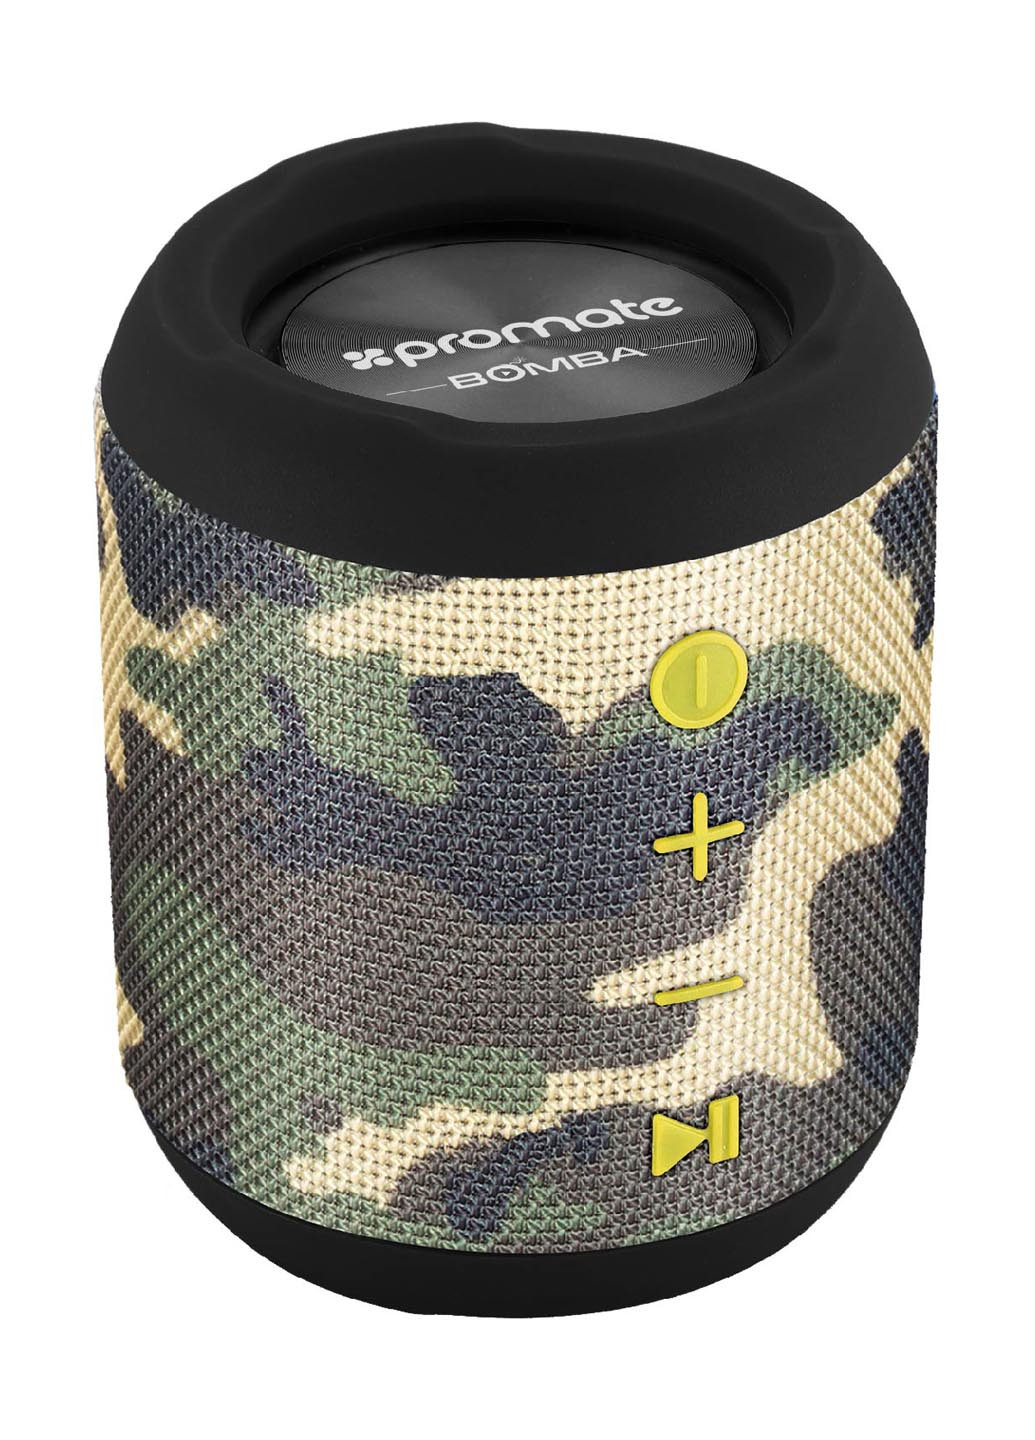 Портативная колонка Camouflage Promate bomba (132824613)